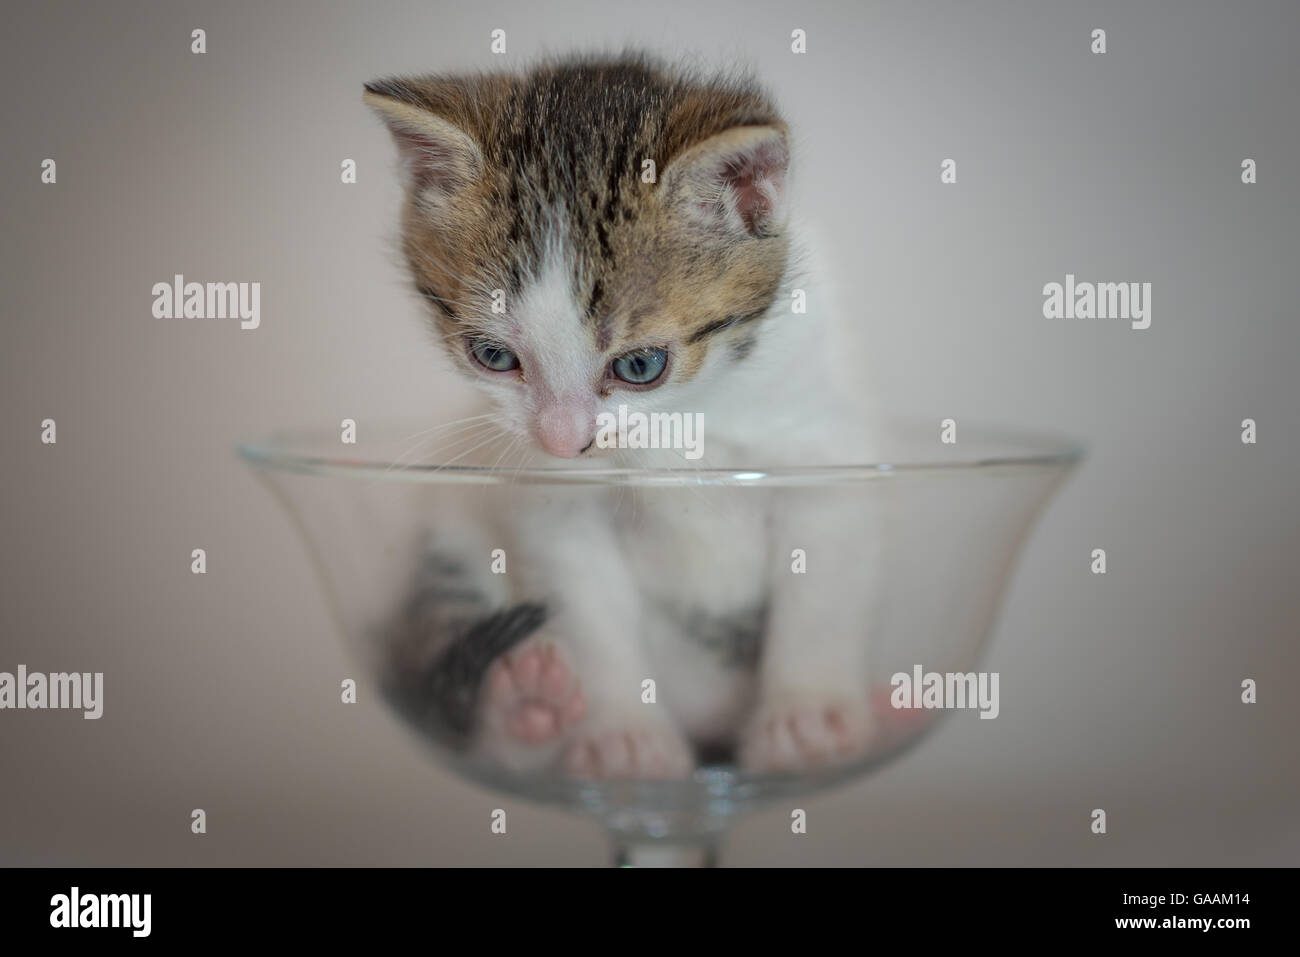 Cute little kitten in glass cup Stock Photo